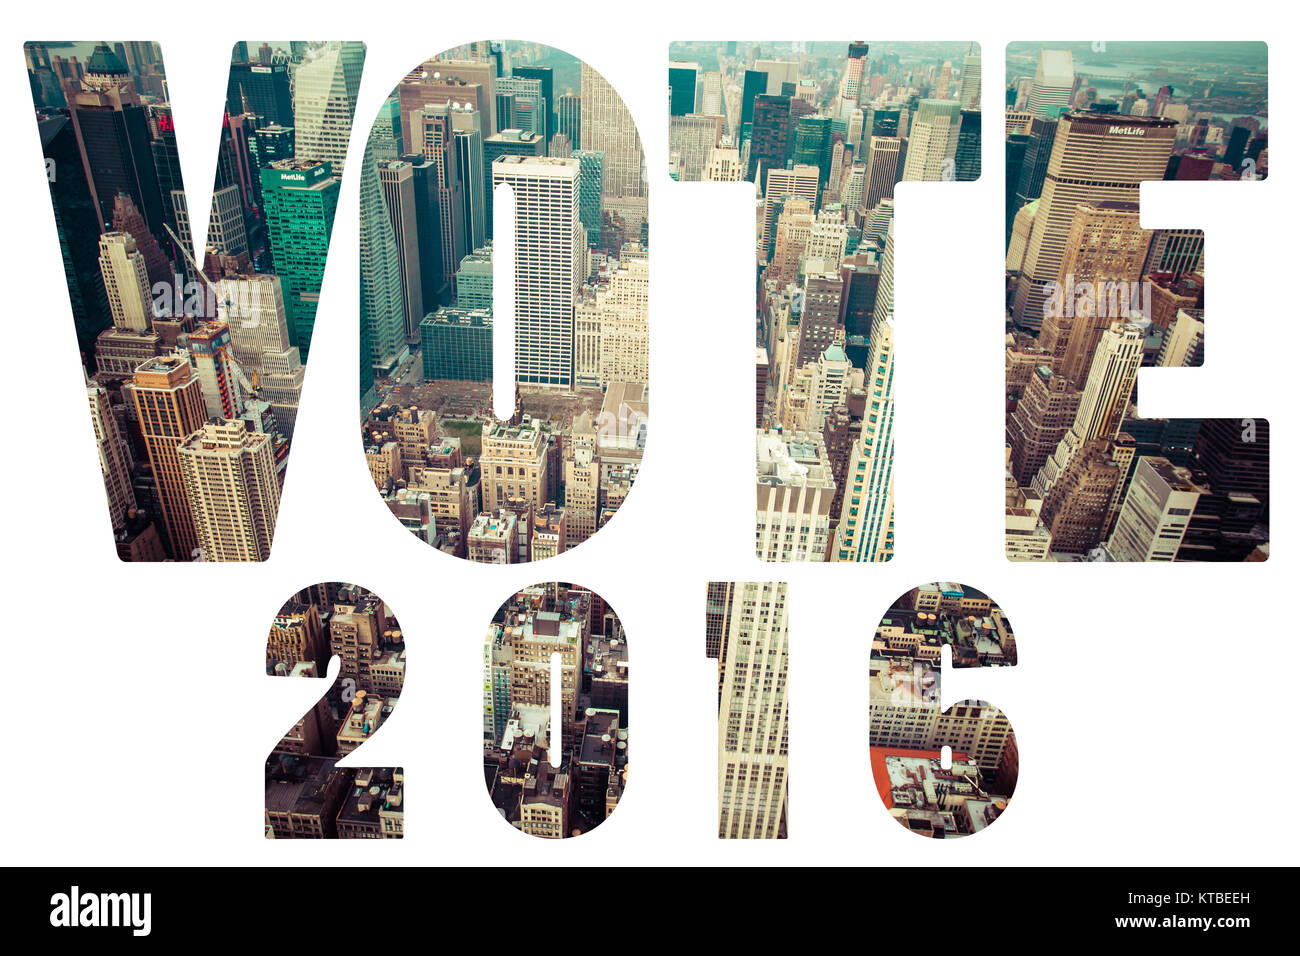 Wort wahl Abstimmung 2016 über Manhattan Skyline Stockfoto